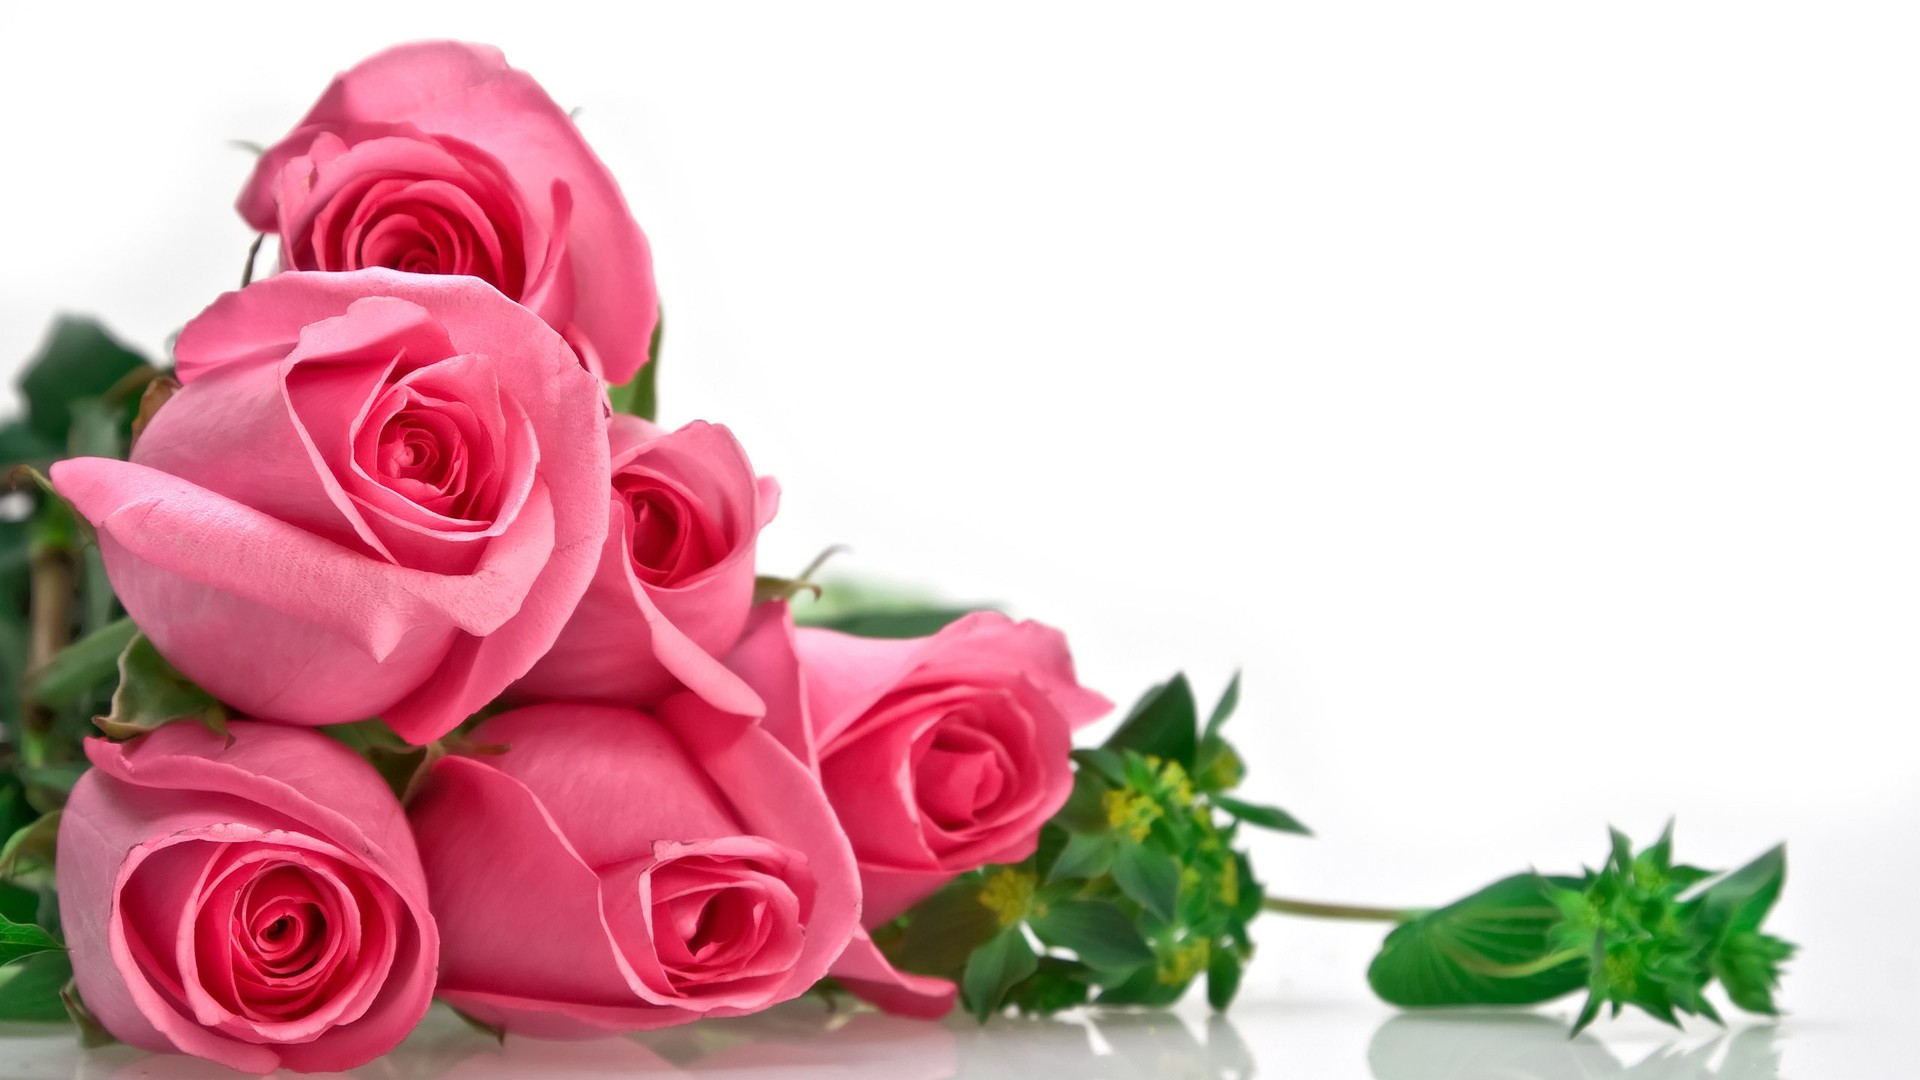 Tặng hoa cho mẹ ngày 20/10 là đóa hoa hồng chính là bí quyết truyền tải thông điệp rằng mẹ chính là người phụ nữ đẹp nhất và tuyệt vời nhất